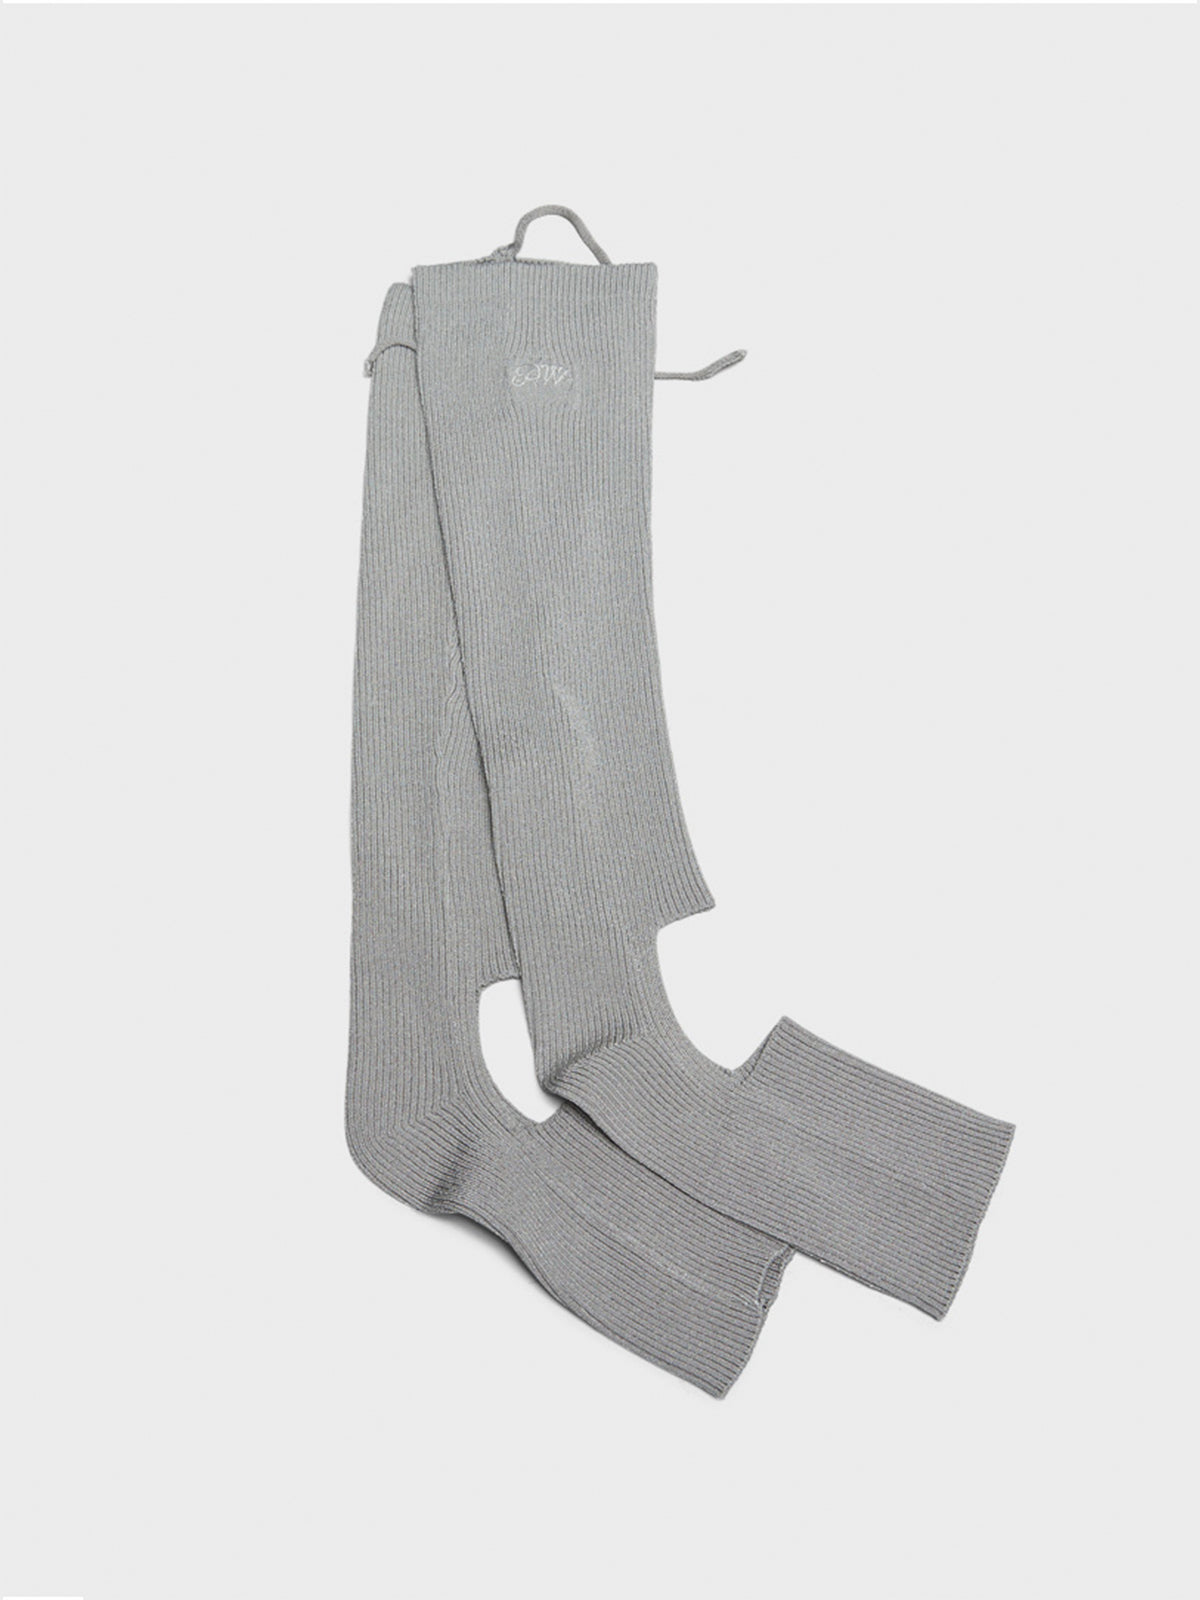 Carolina Leg Warmers in Grey